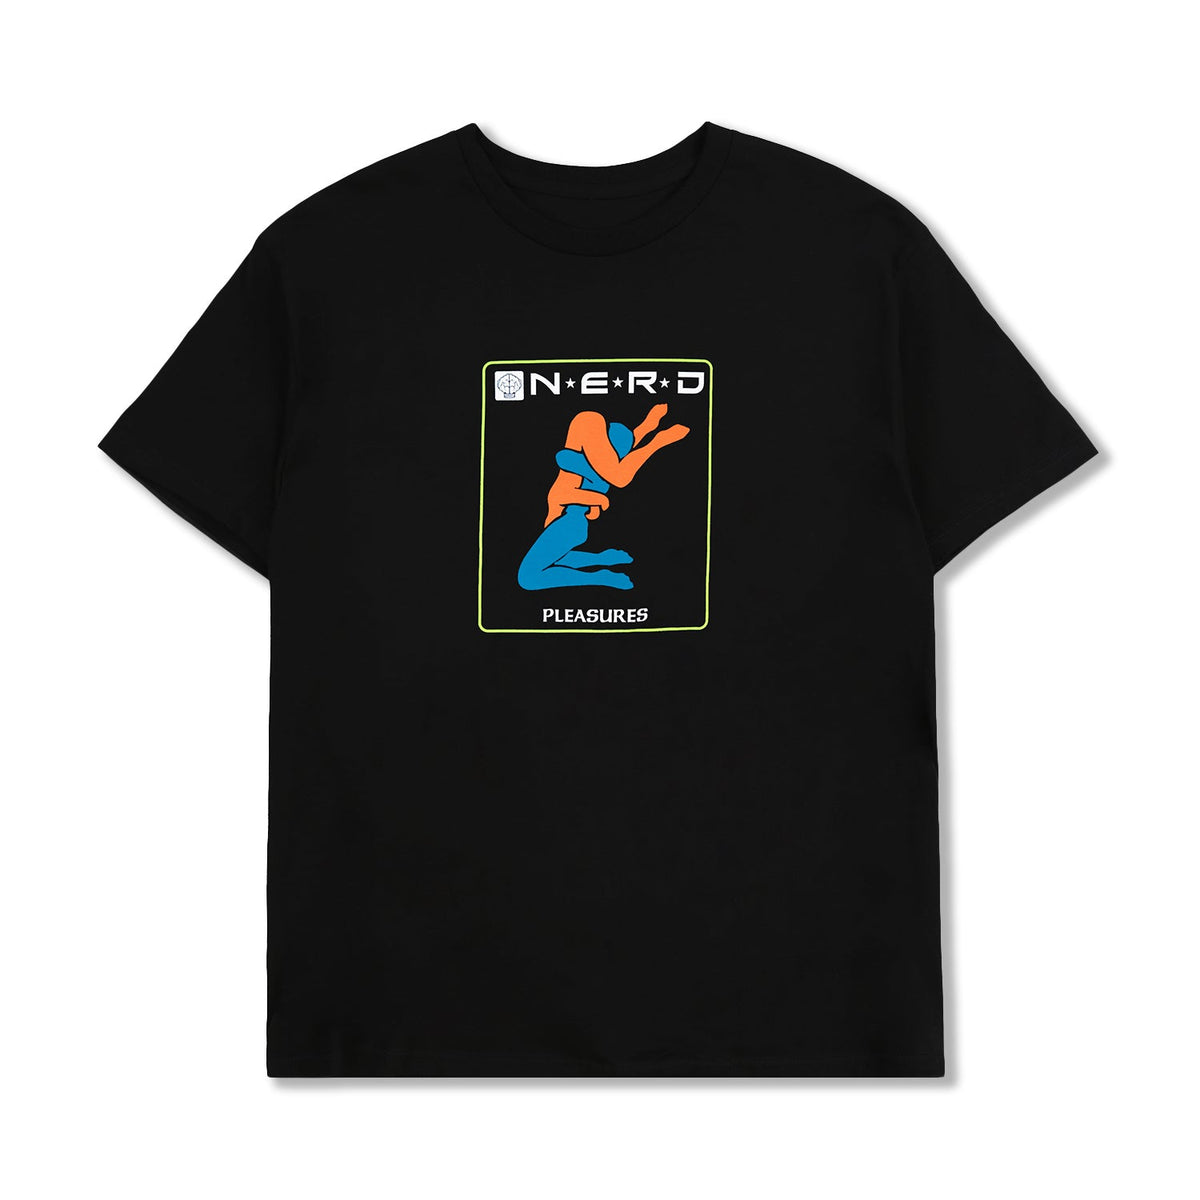 Pleasures Men Provider T-Shirt Black - T-SHIRTS - Canada